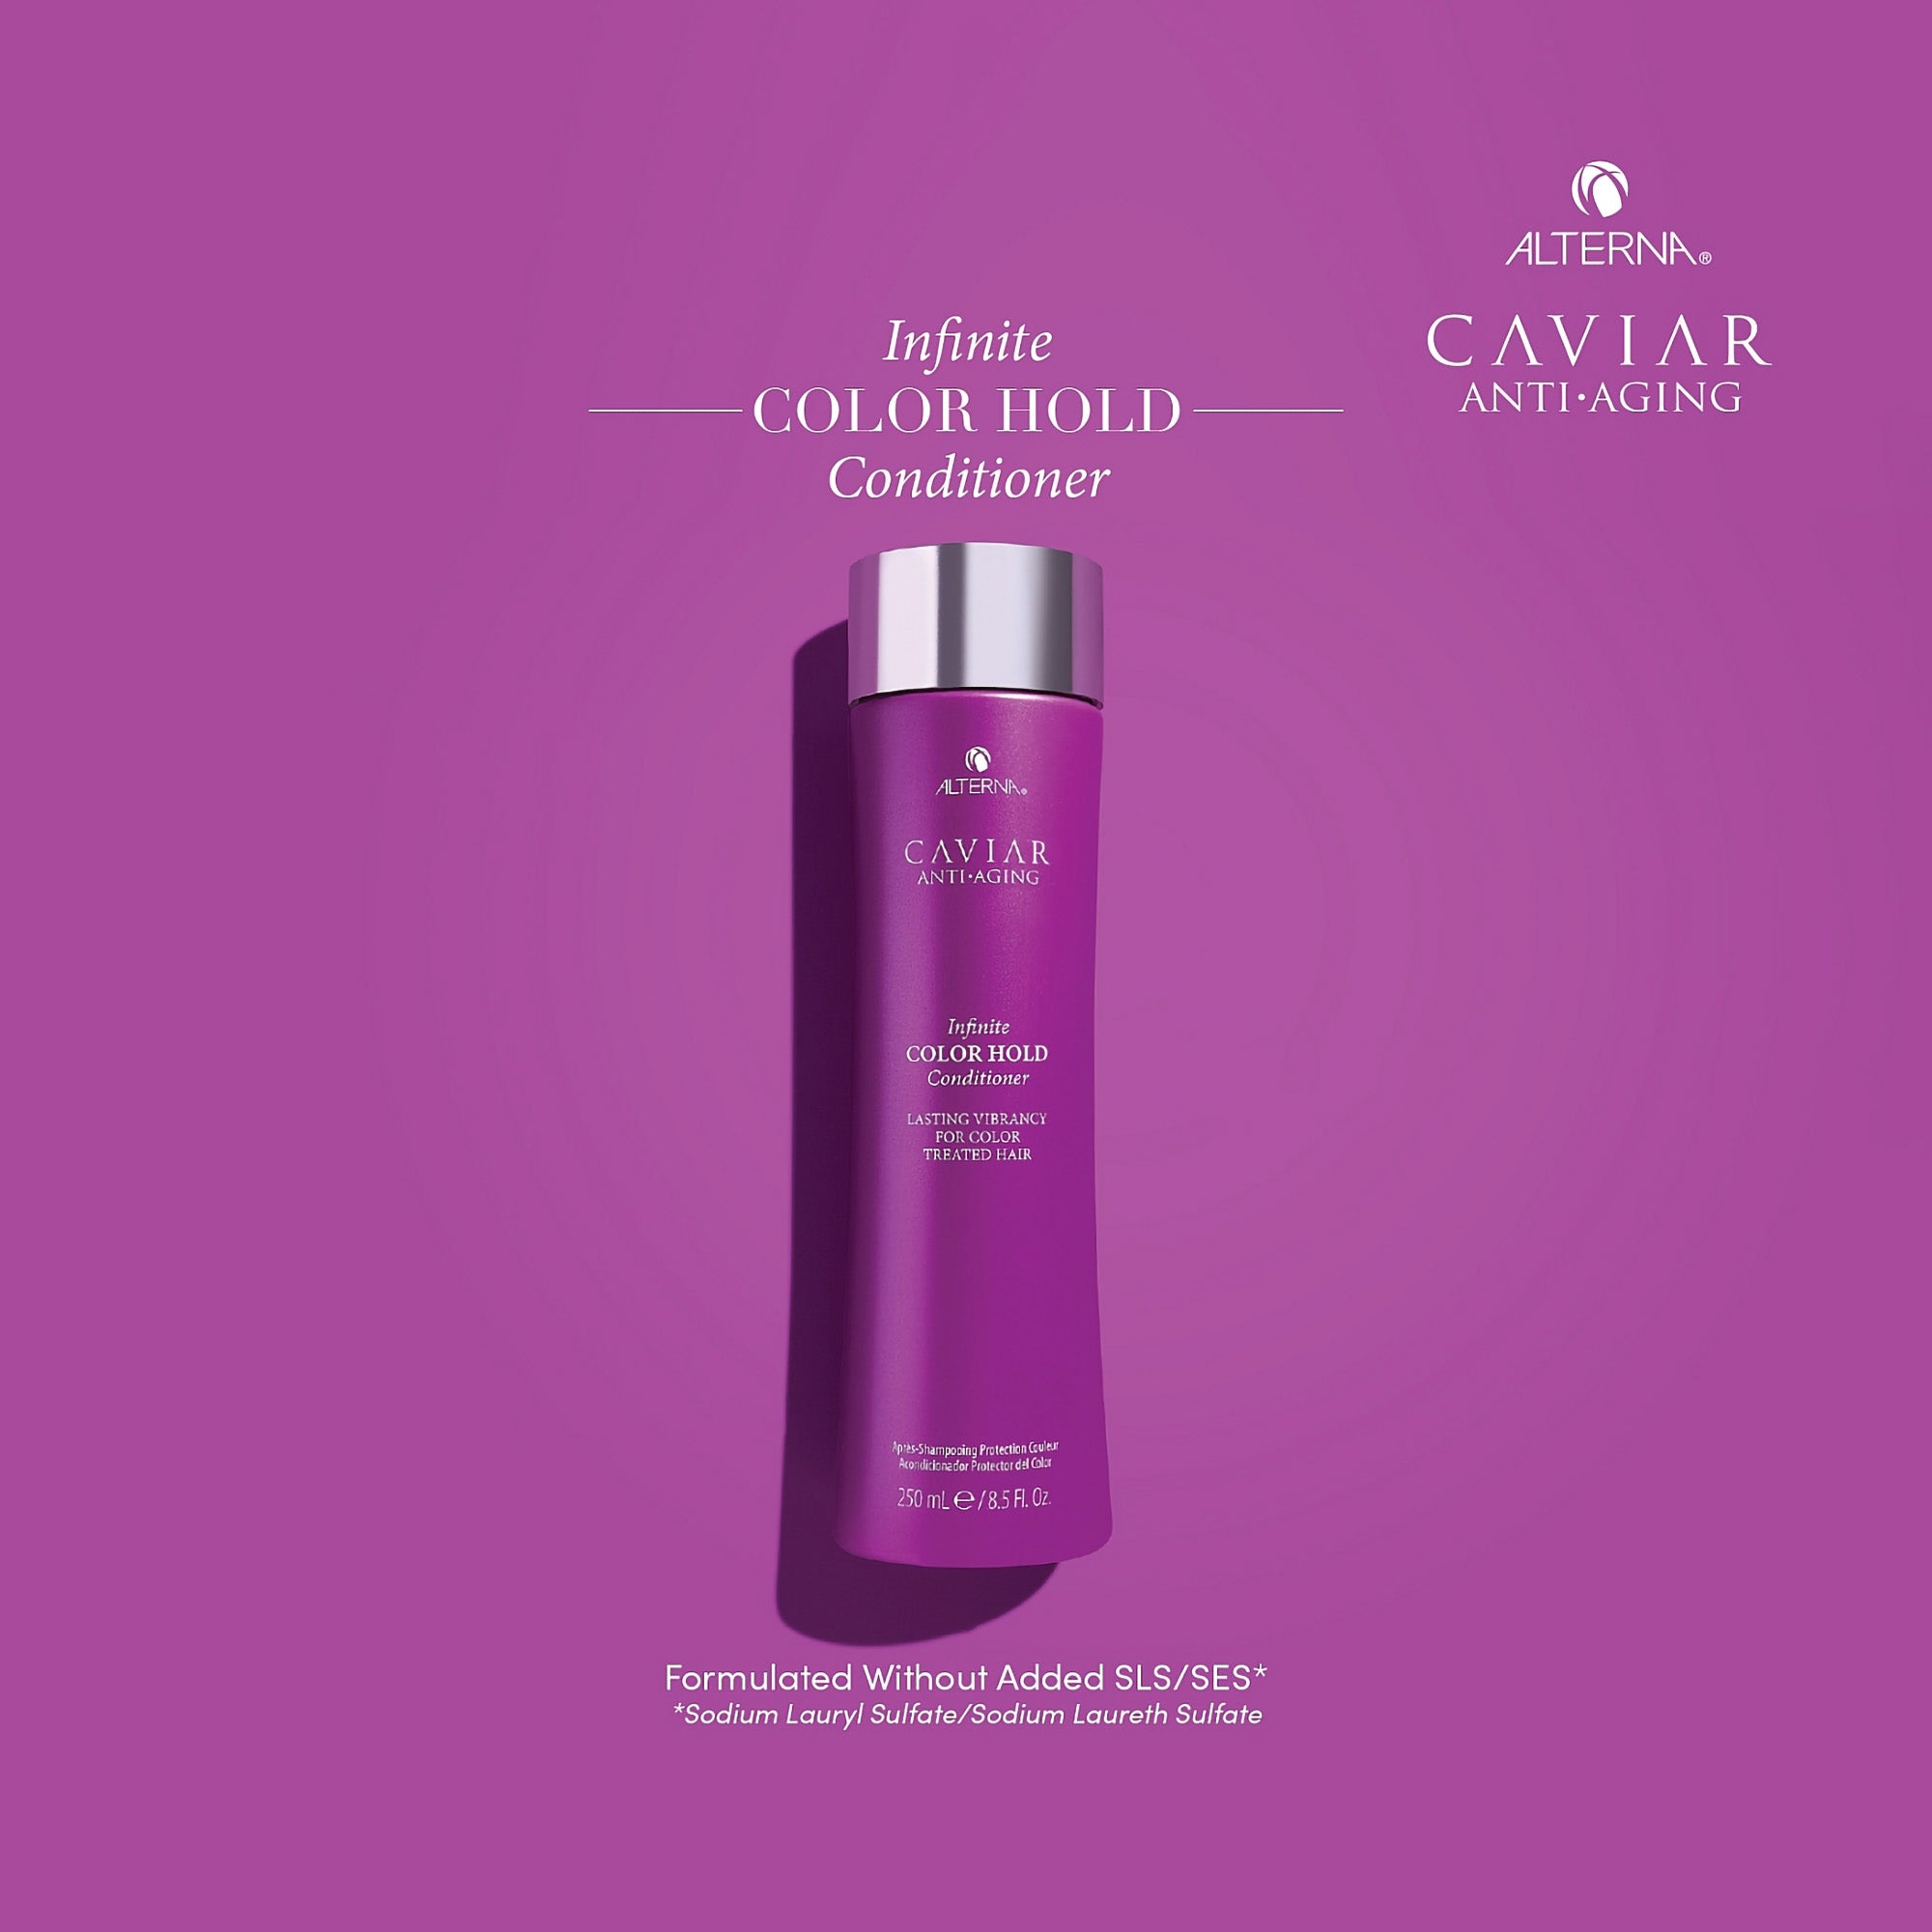 Alterna Caviar Anti-Aging Infinite Color Hold Conditioner / 8.5OZ